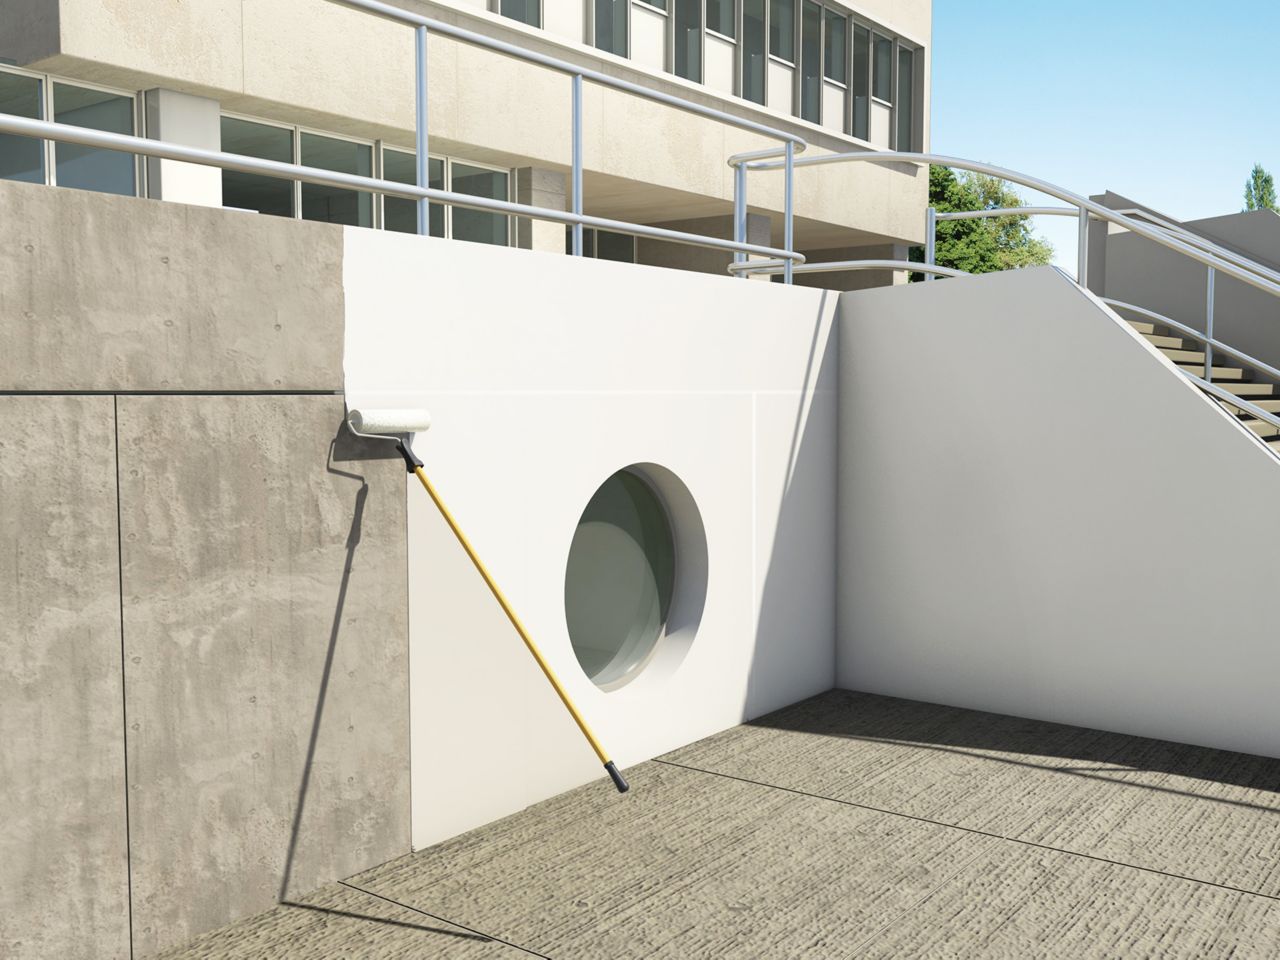 西丙基混凝土防护系统在某住宅建筑中的应用